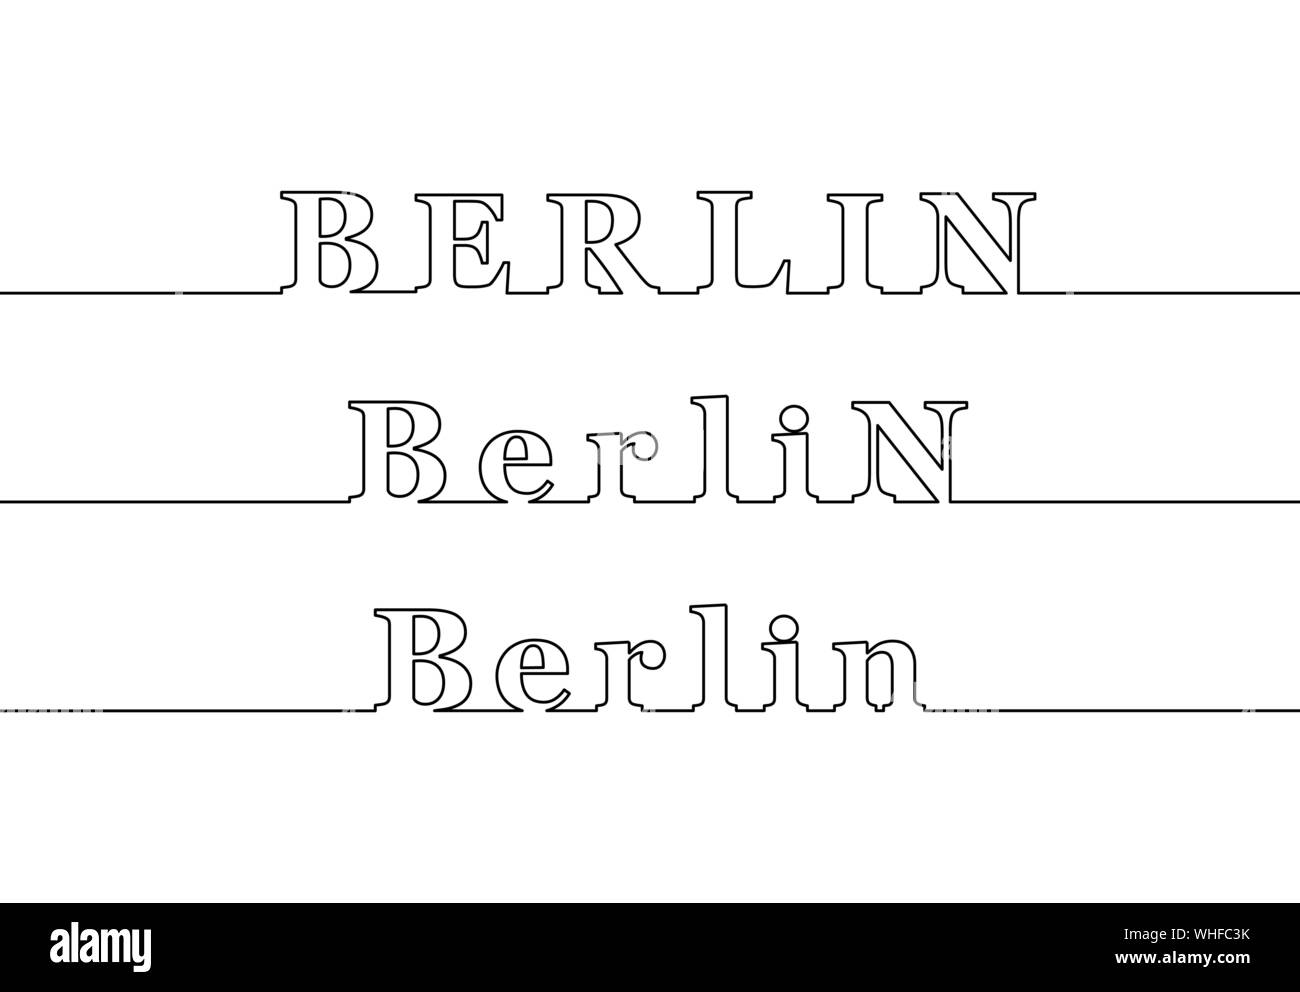 Berlin. Le nom de la capitale de l'Allemagne sous la forme d'une ligne de contour. Les lettres majuscules et minuscules Illustration de Vecteur